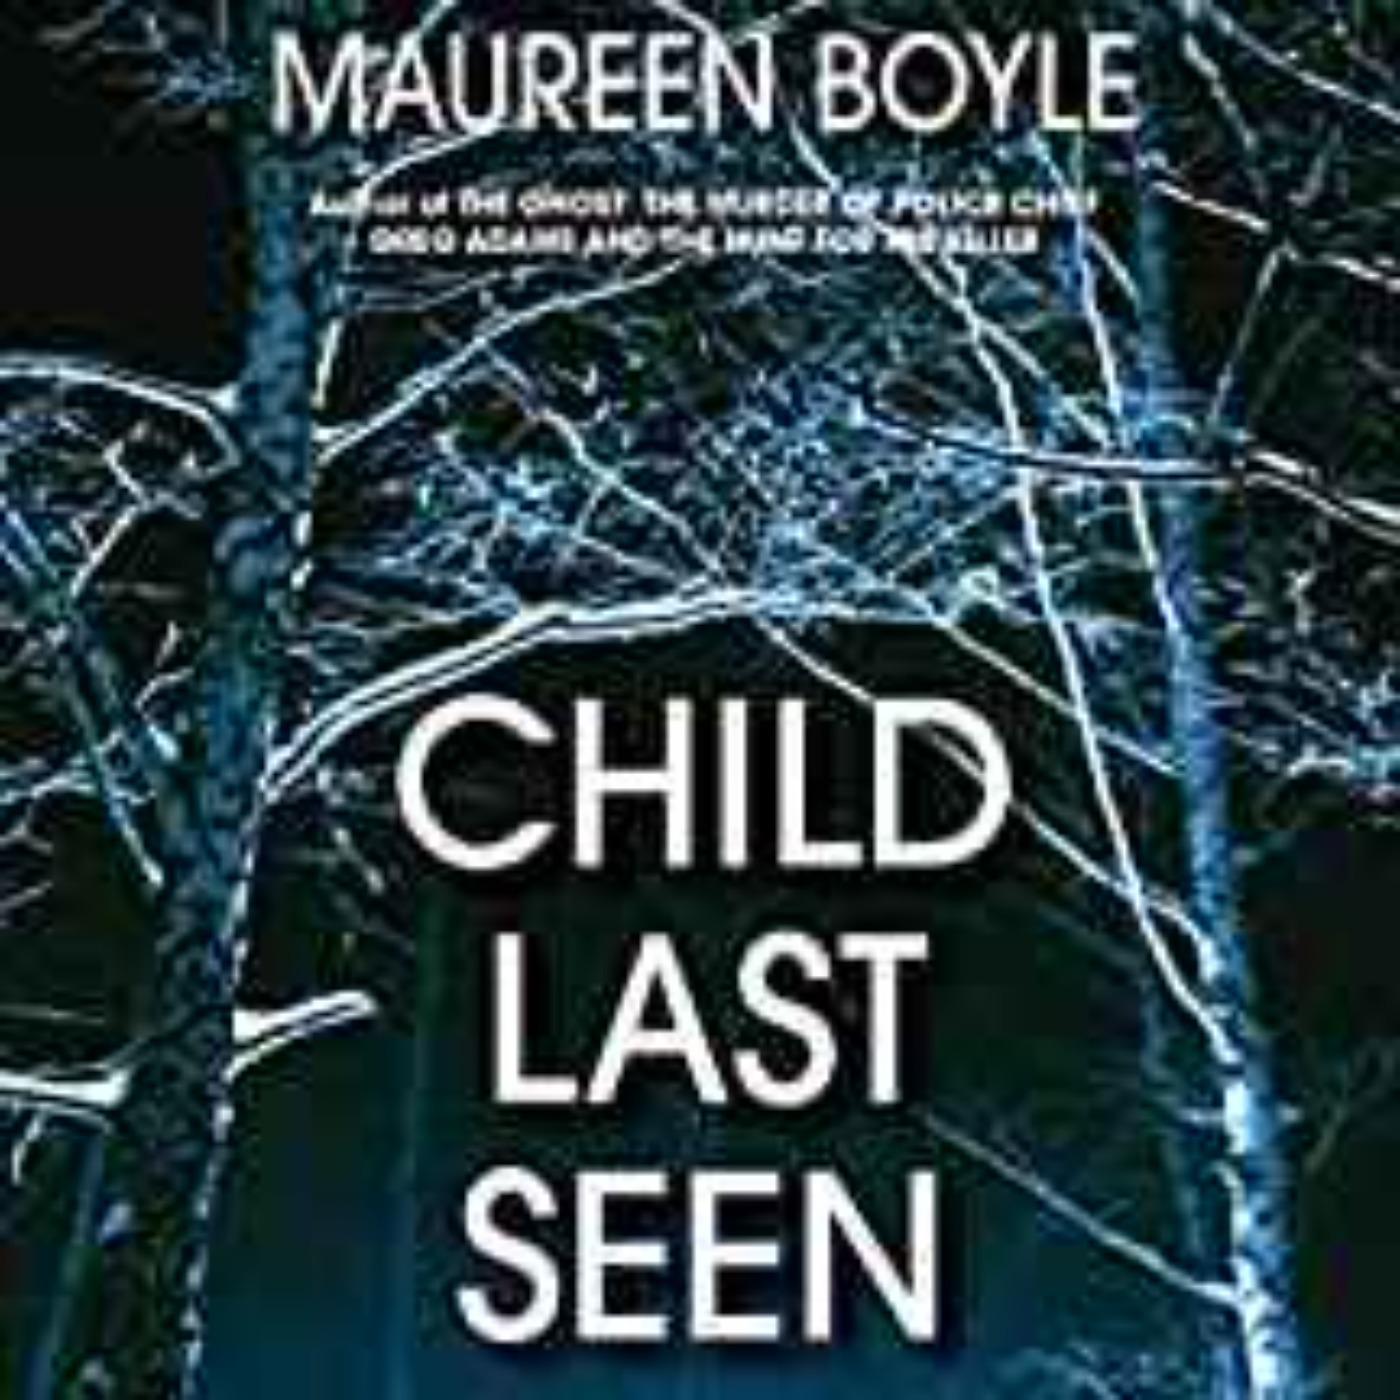 Maureen Boyle - Child Last Seen